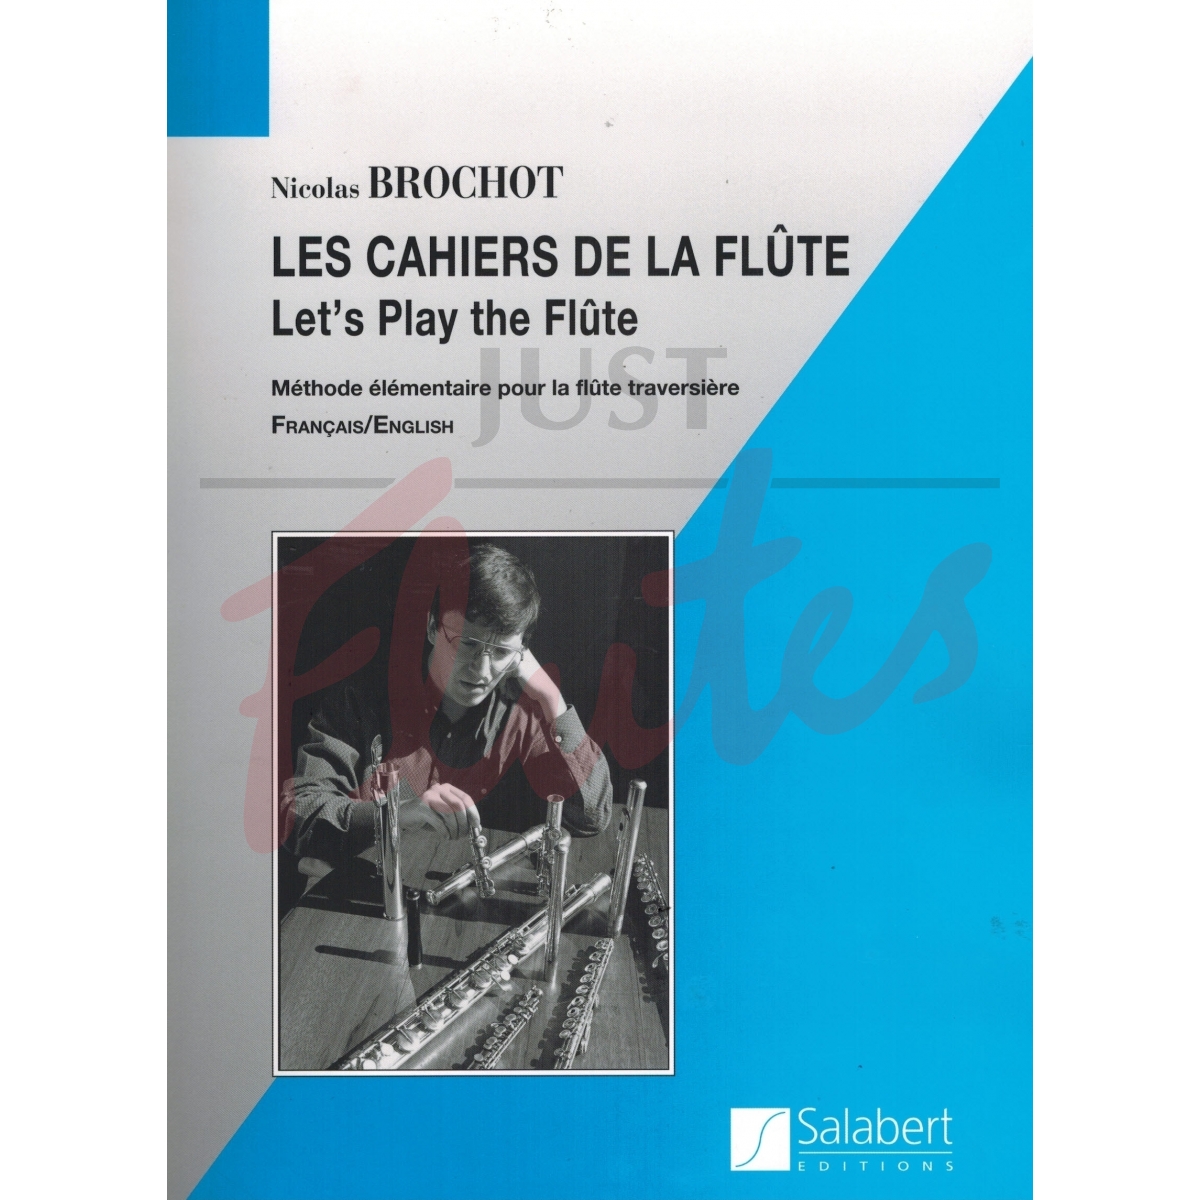 Let's Play The Flute (Les Cahiers de la Flute) Books 1-4